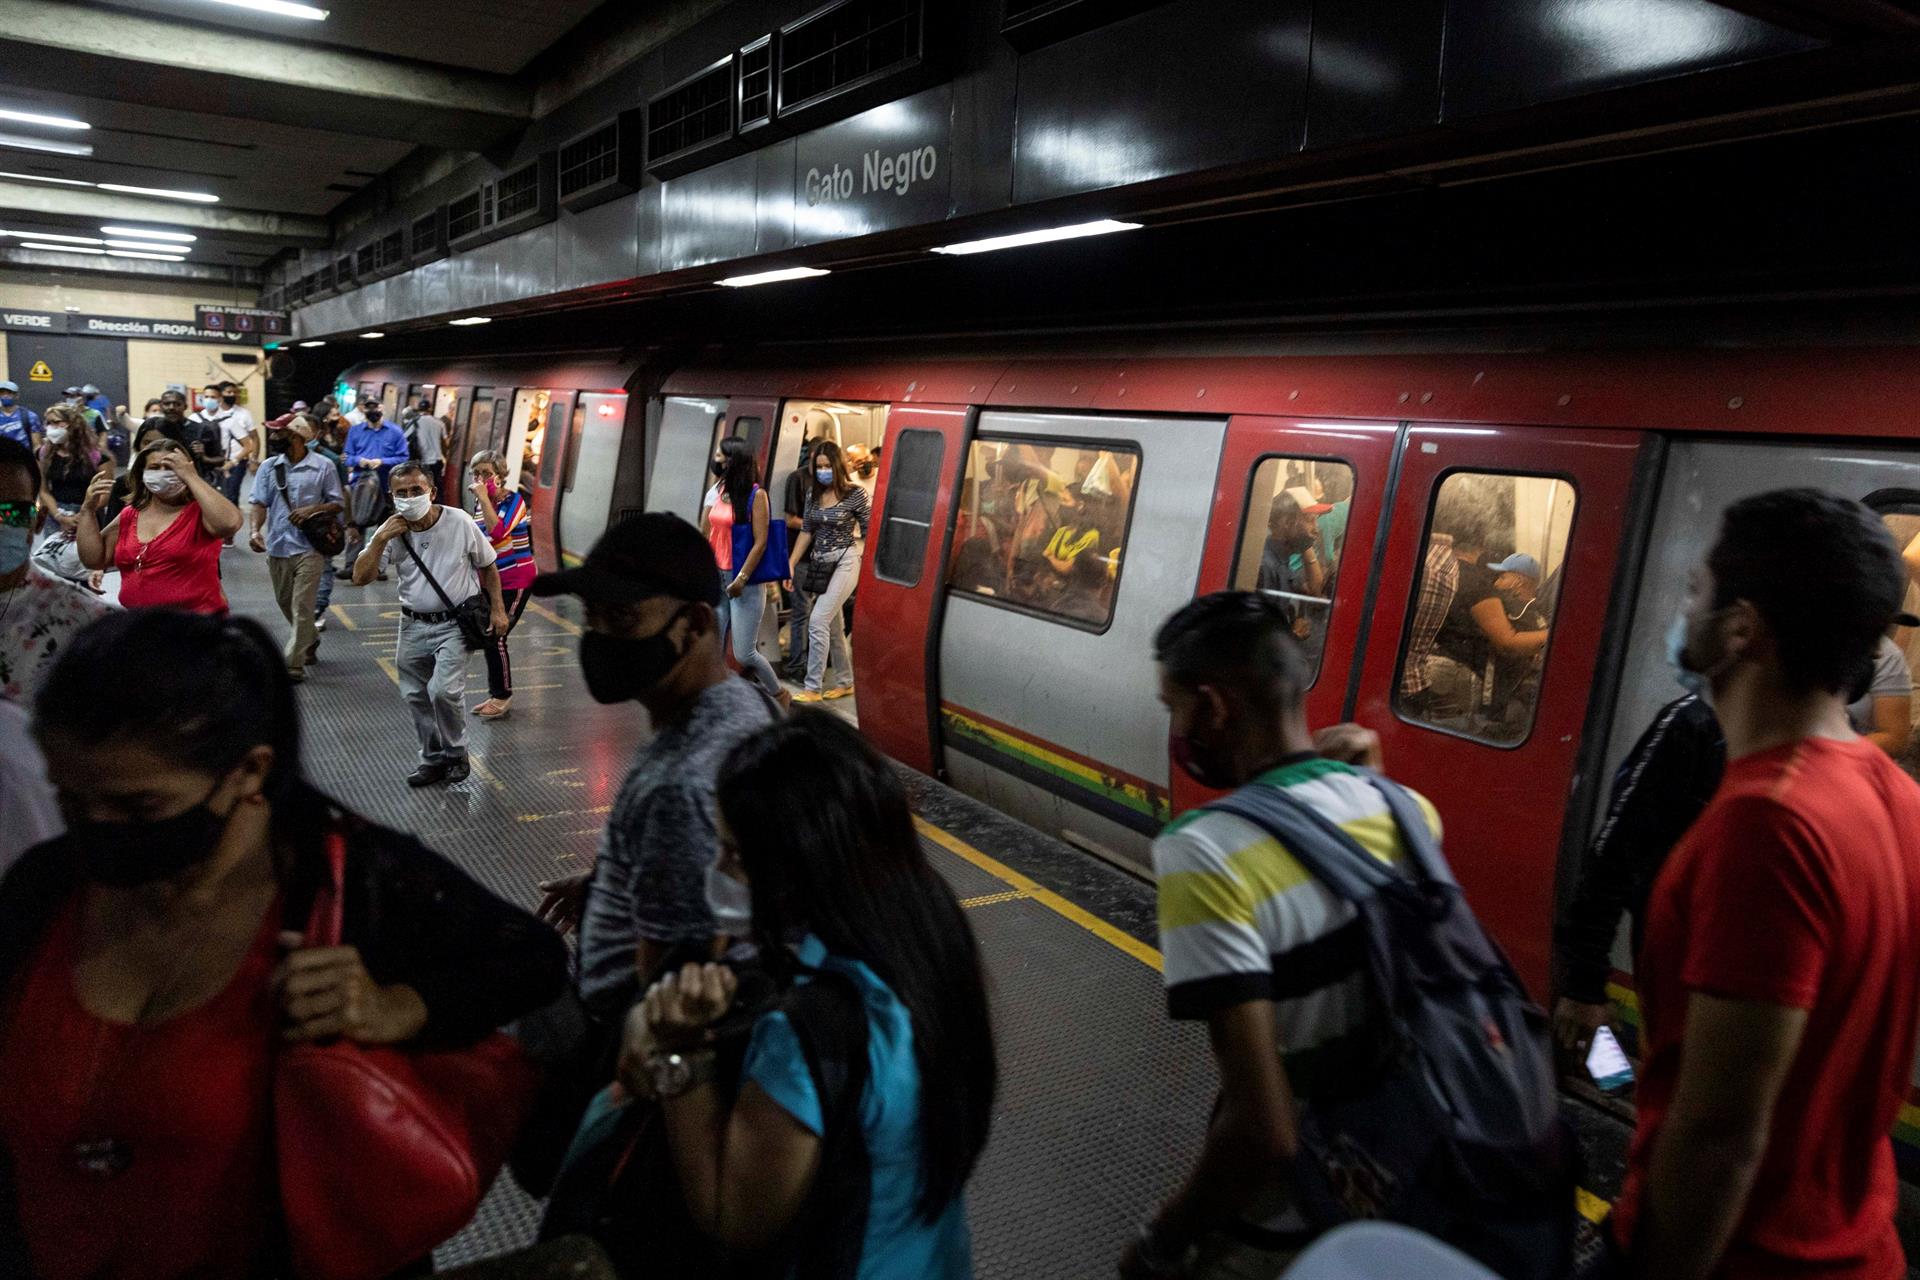 Desalojaron la estación Altamira del Metro de Caracas por avería en uno de sus vagones #4Ene (Video)